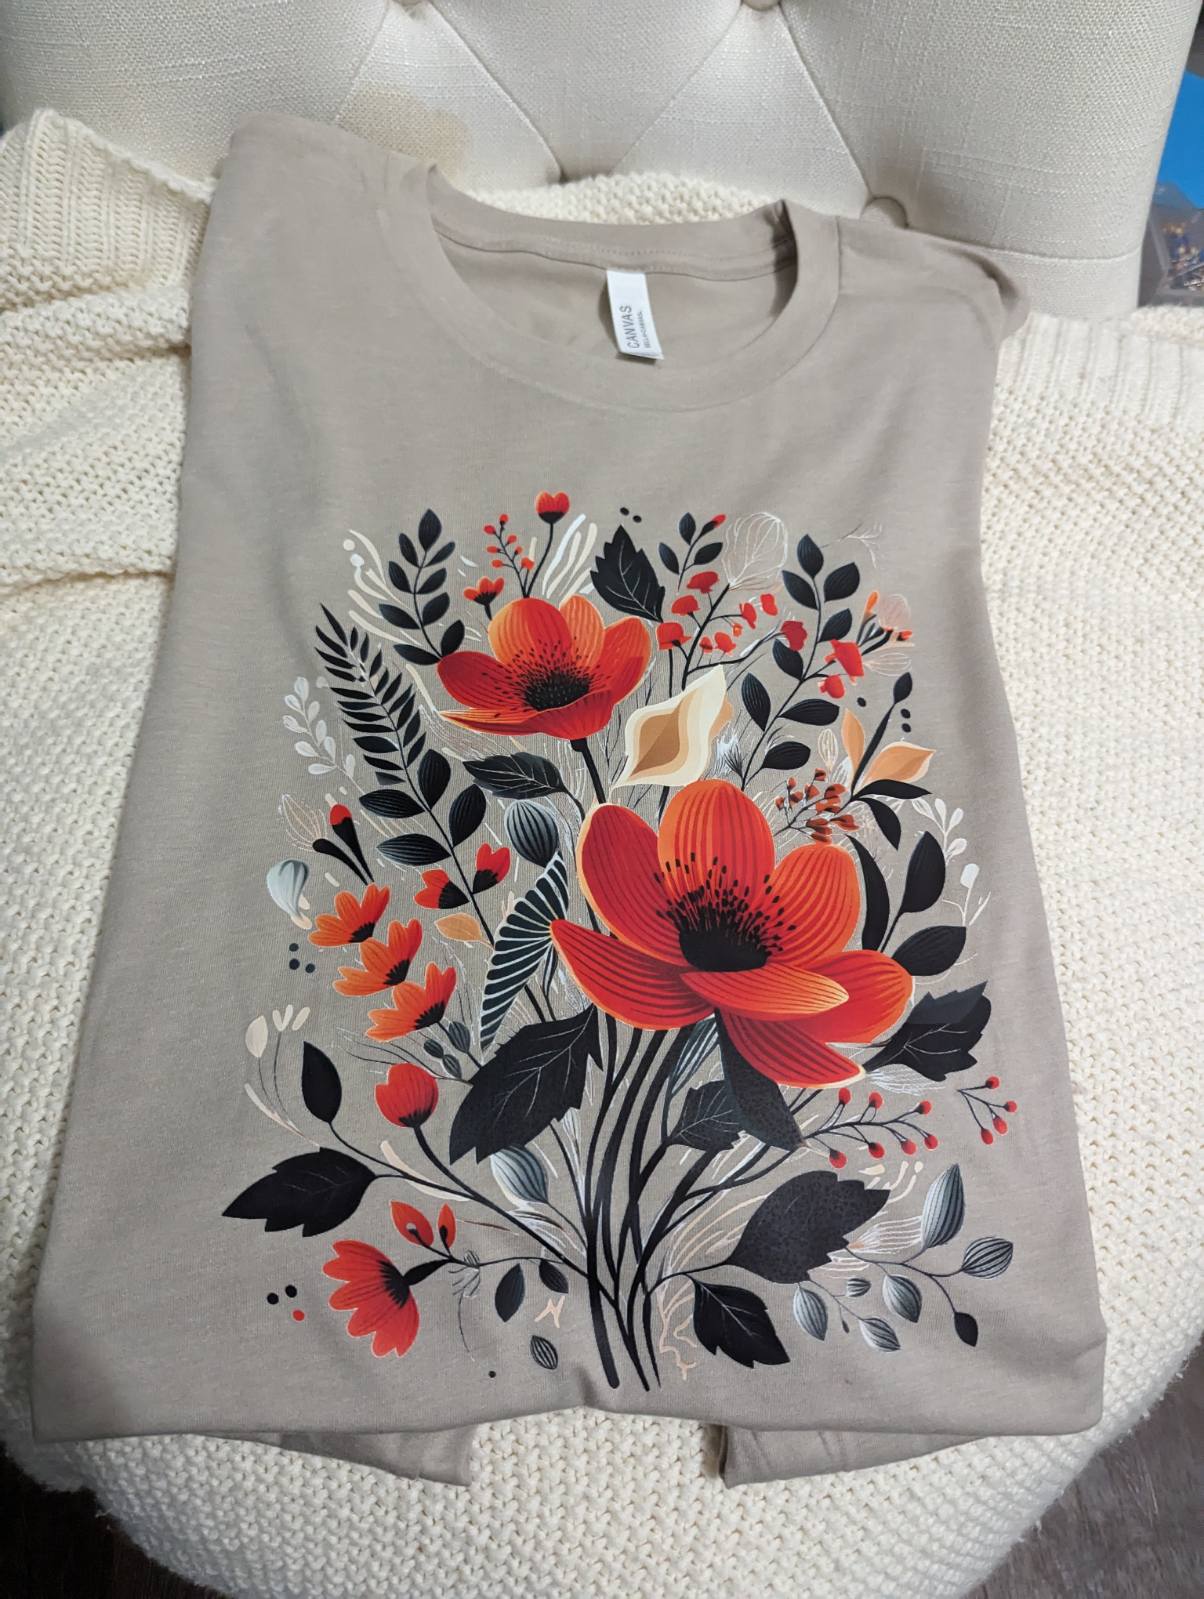 Fall Flower Shirt, Vintage Flowers, Wildflower Shirt, Garden Lover Gift, Autumn Shirt.